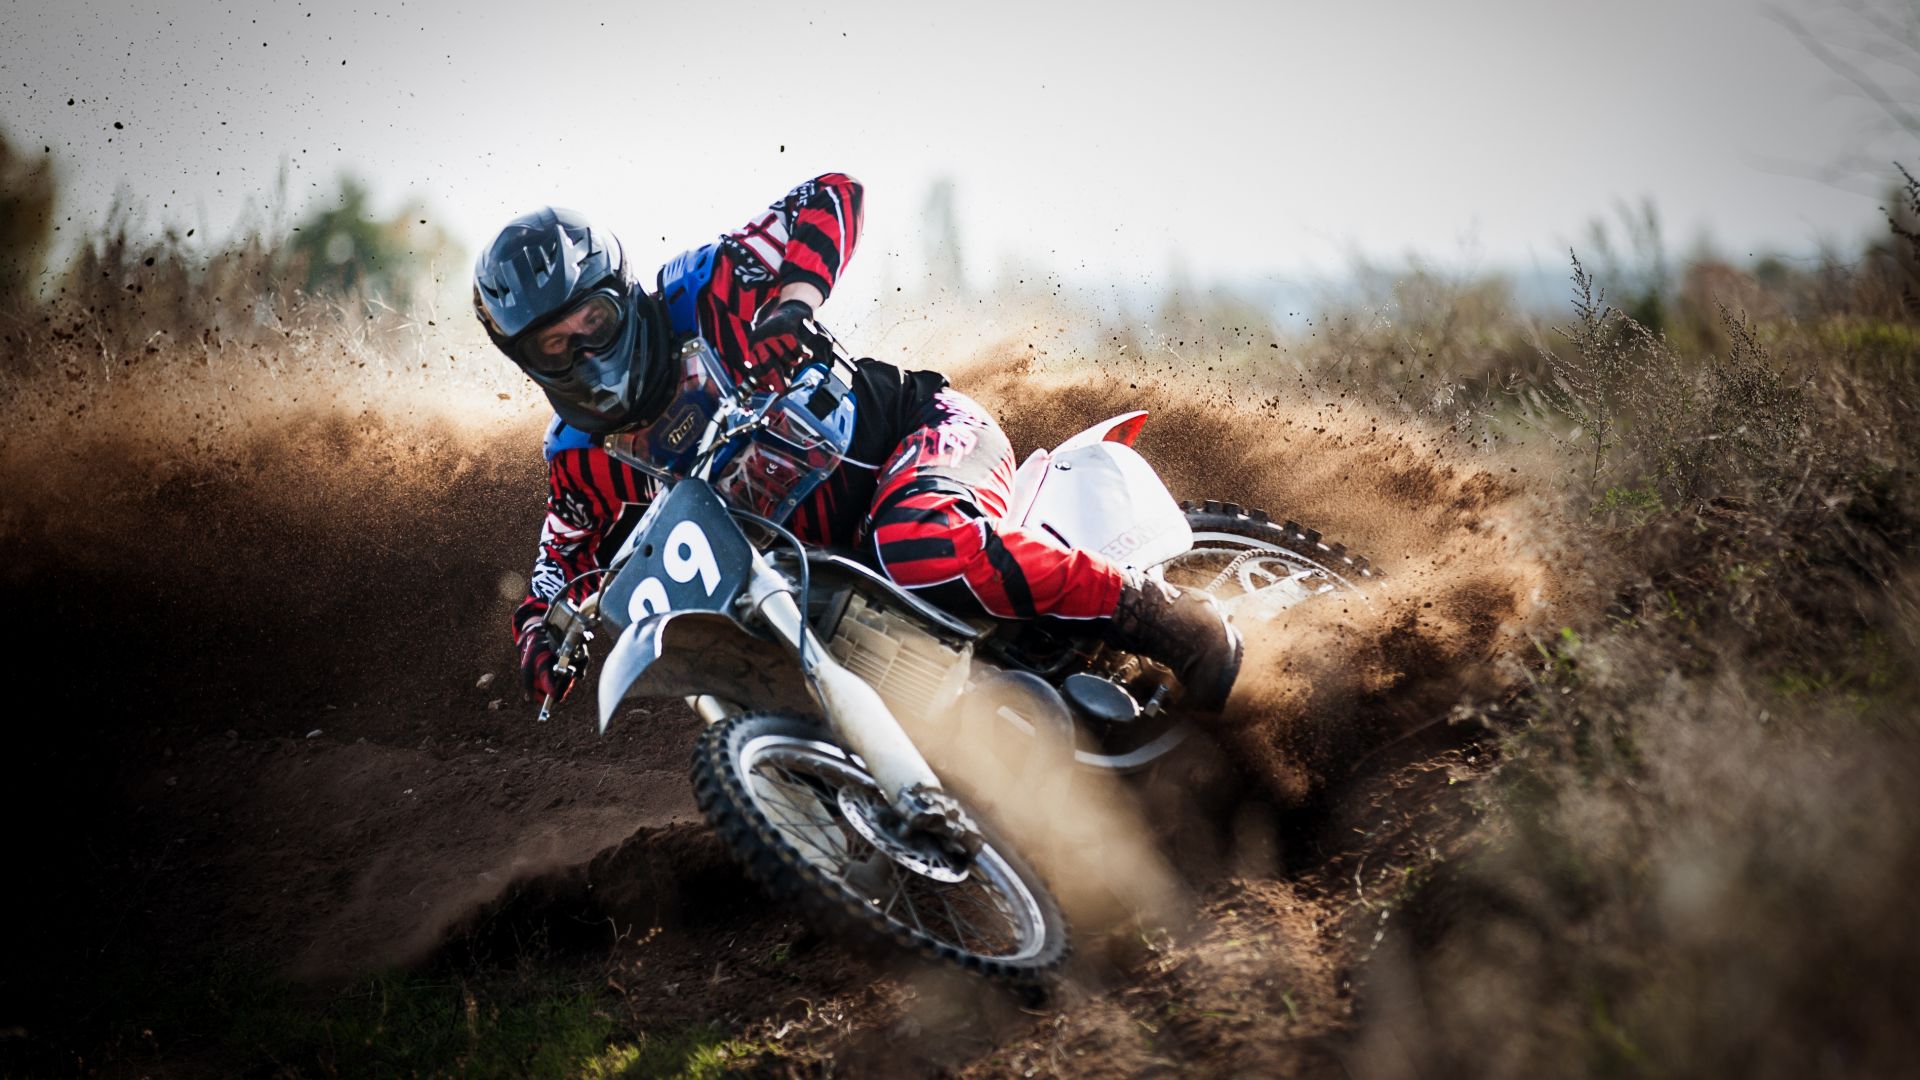 Desktop Wallpaper Motocross Race Bike HD Image Picture